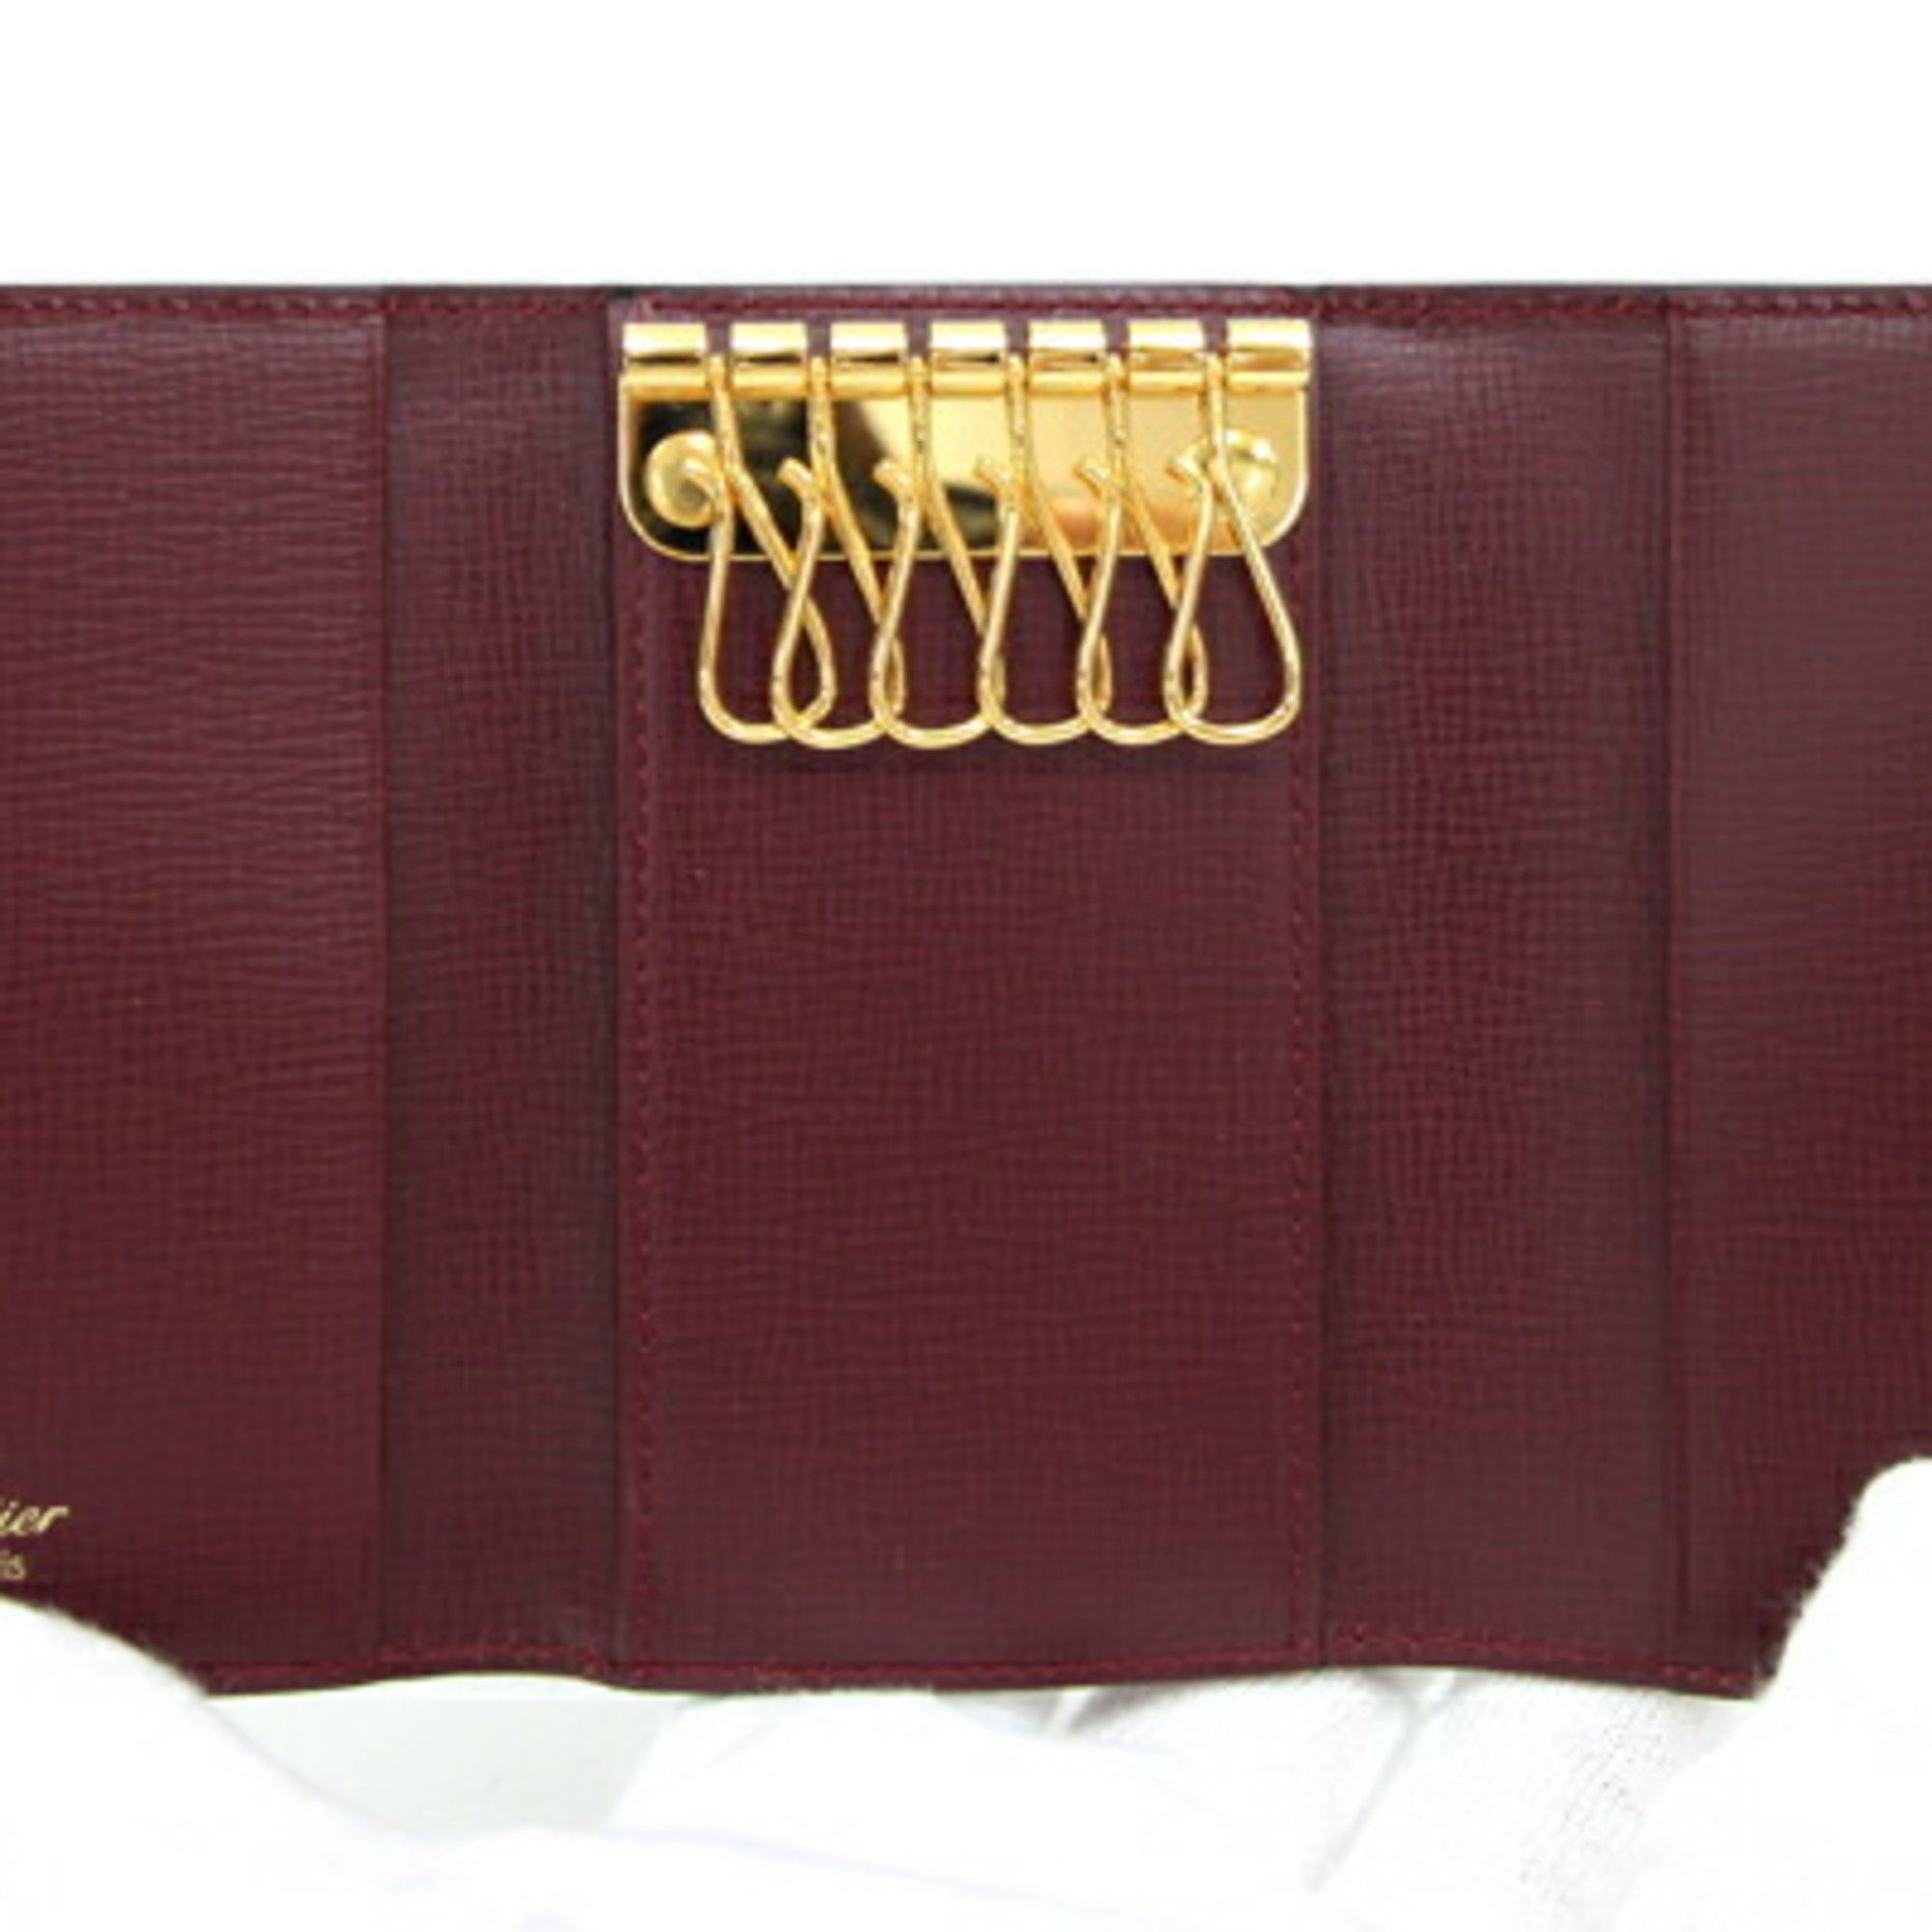 Cartier 6-Key Case Must L3000156 Bordeaux Leather Keys Wine Red Men's Women's